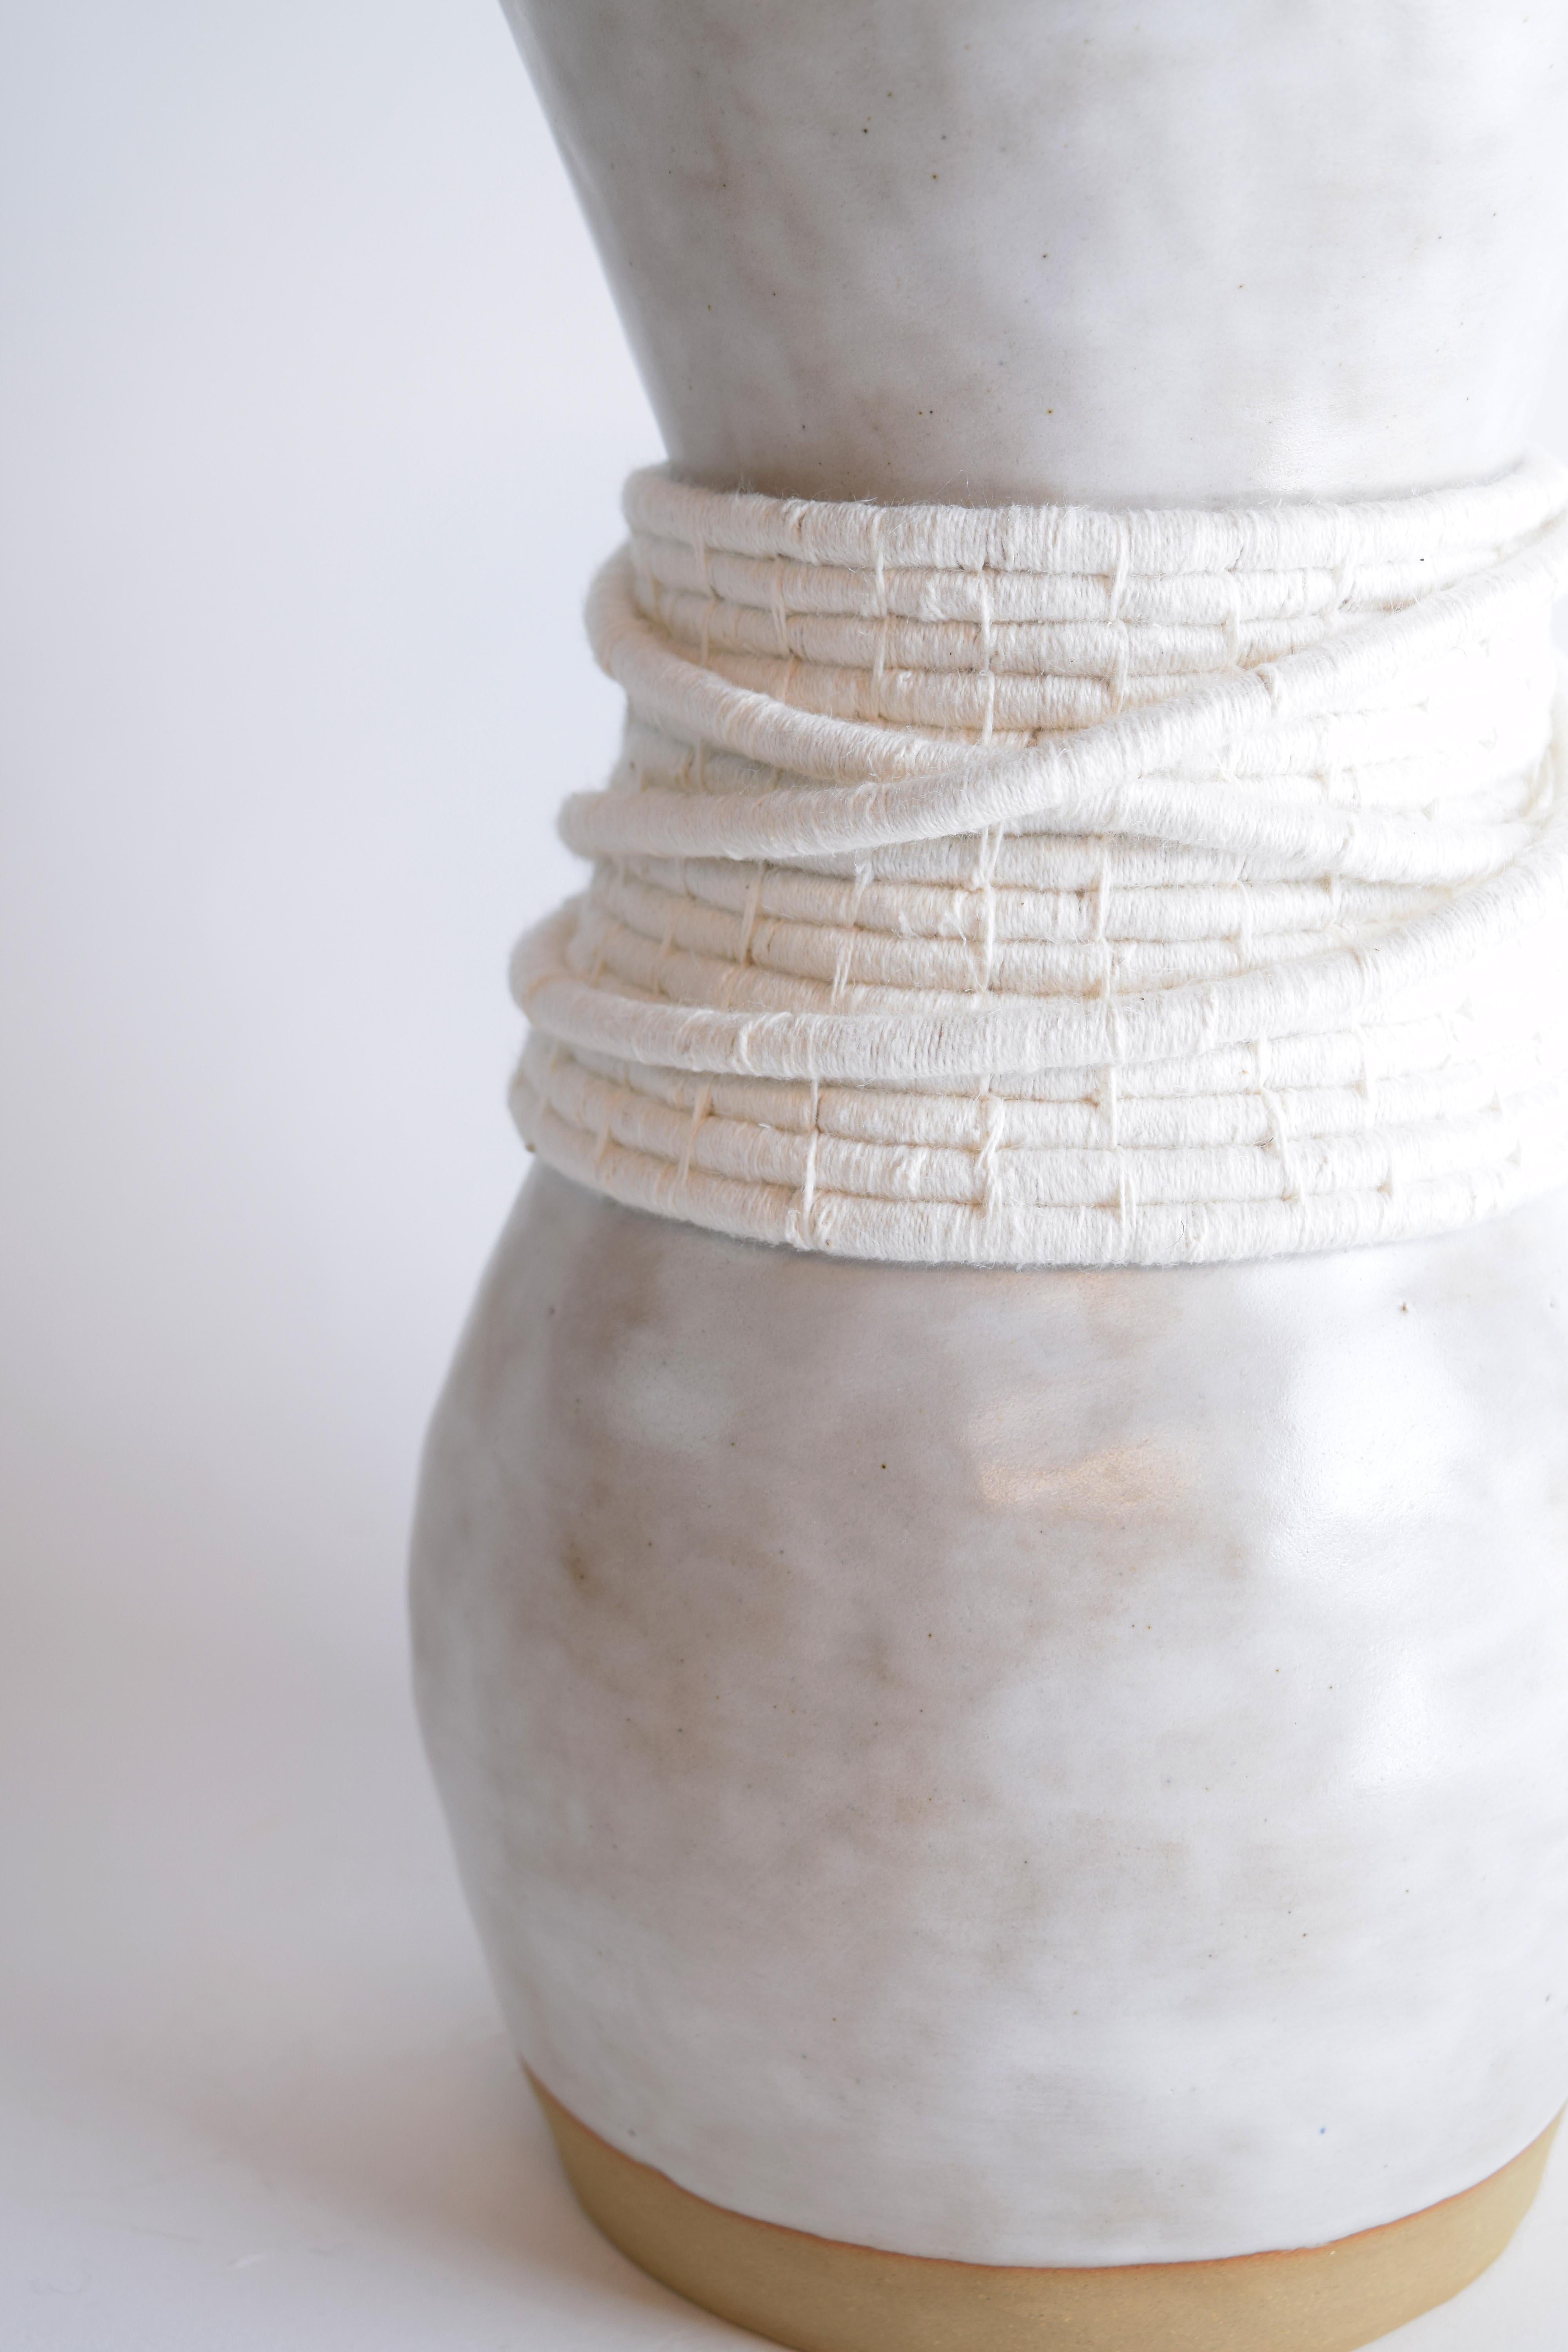 Vase #809 par Karen Gayle Tinney

Vase en grès formé à la main avec une glaçure blanche. Détails en coton blanc tissé sur le pourtour extérieur. Le vase est étanche.

12 